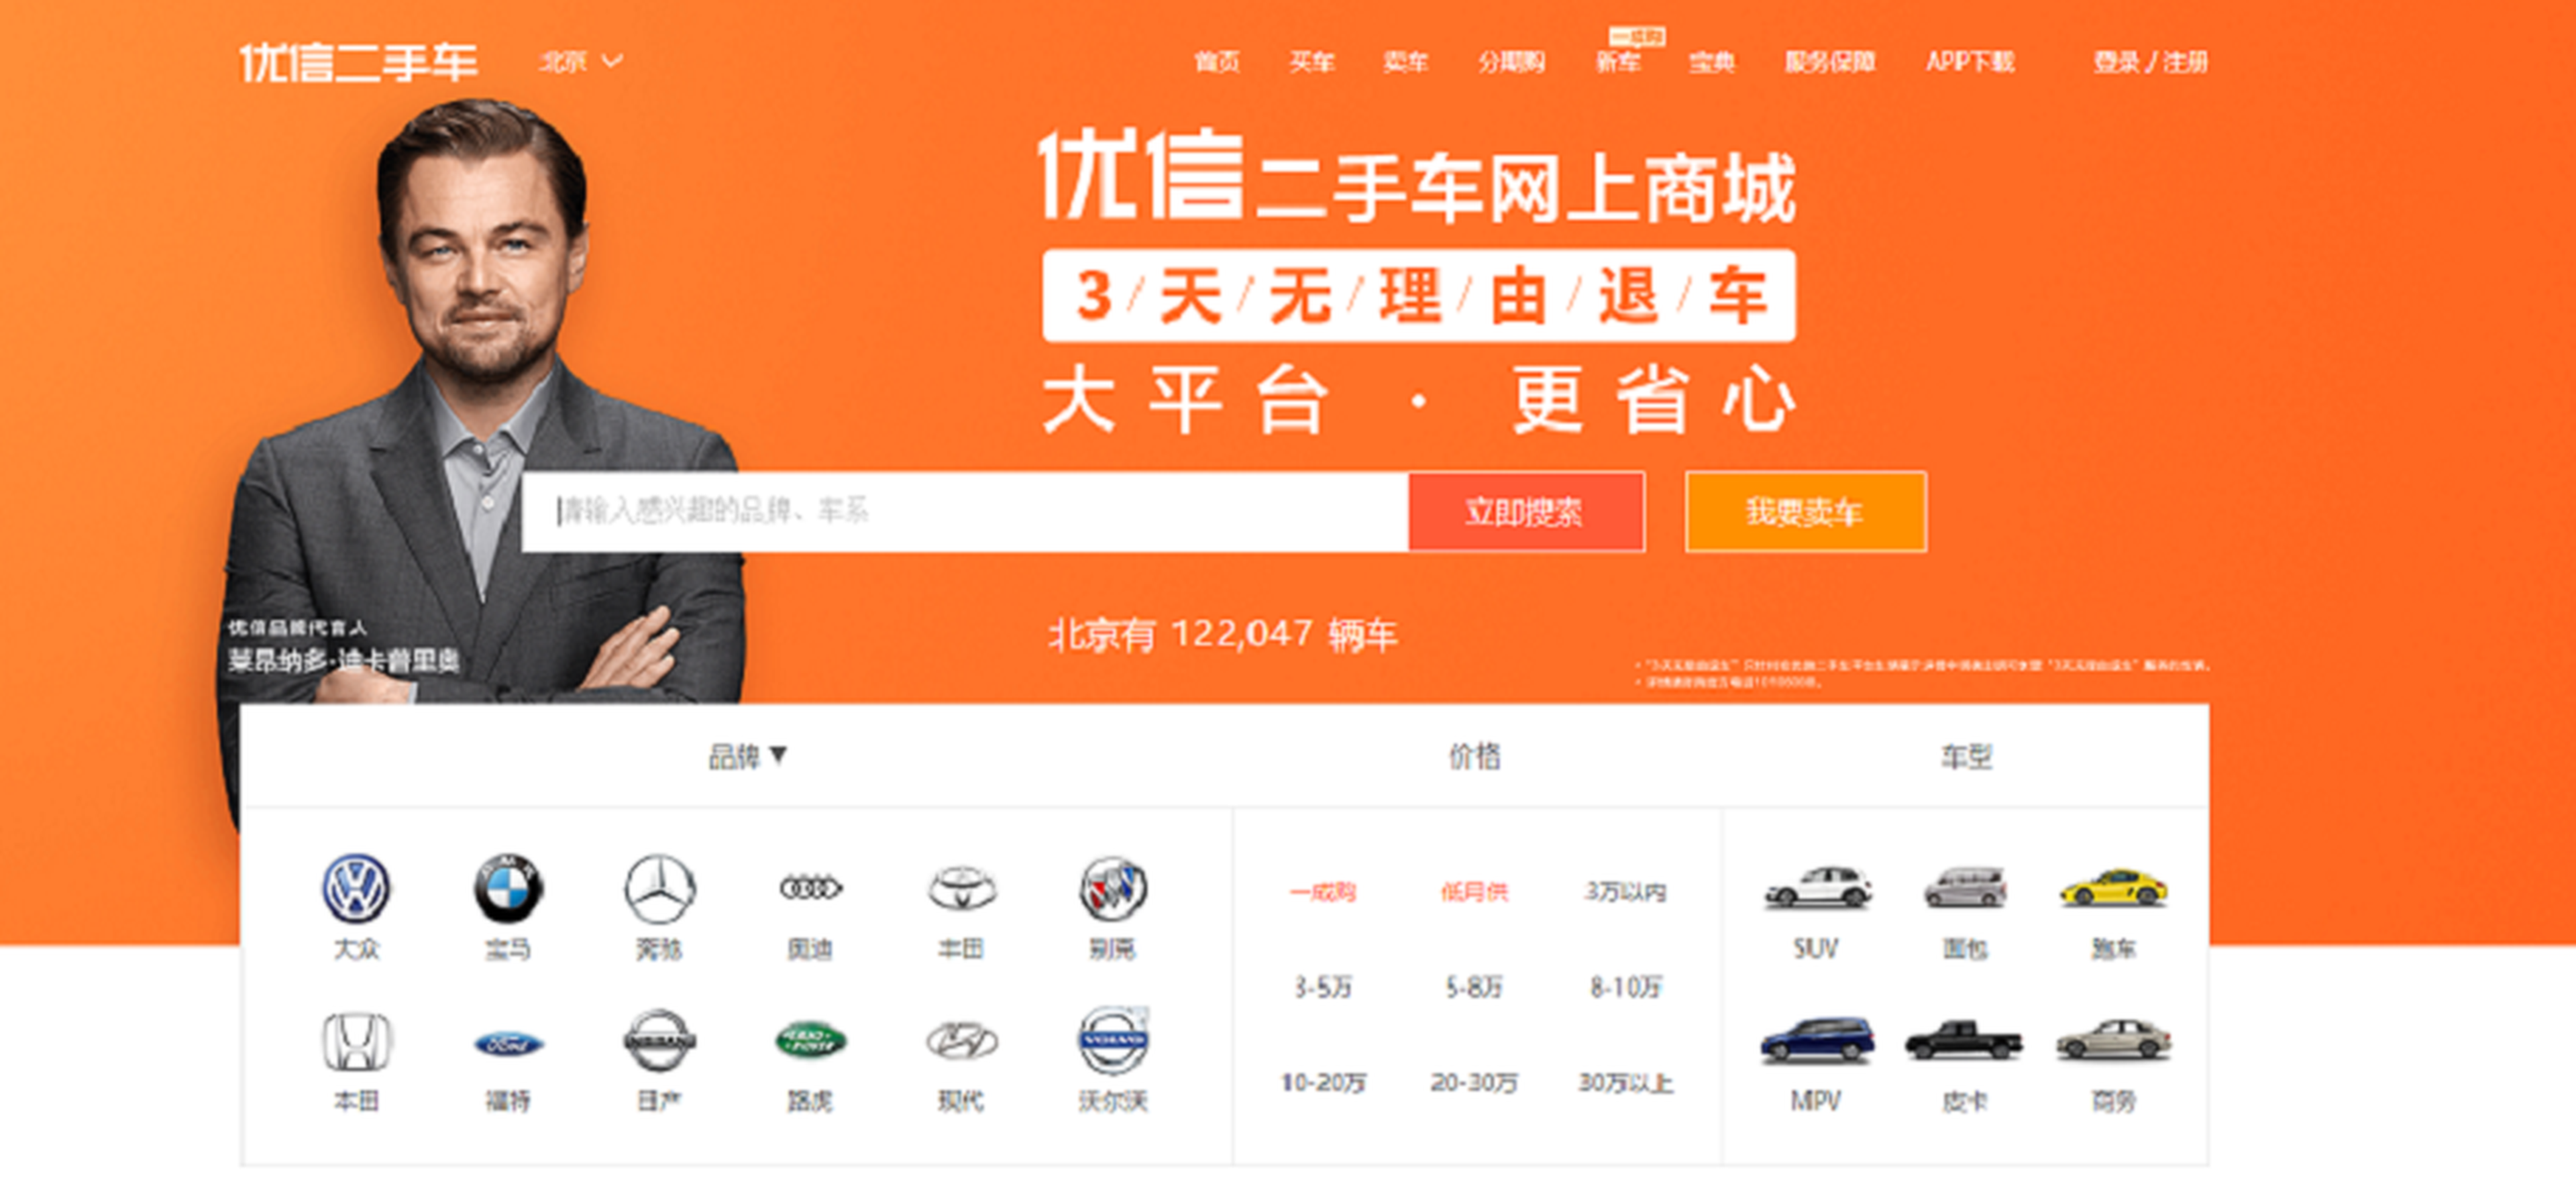 Página web de Uxin (www.xin.com).